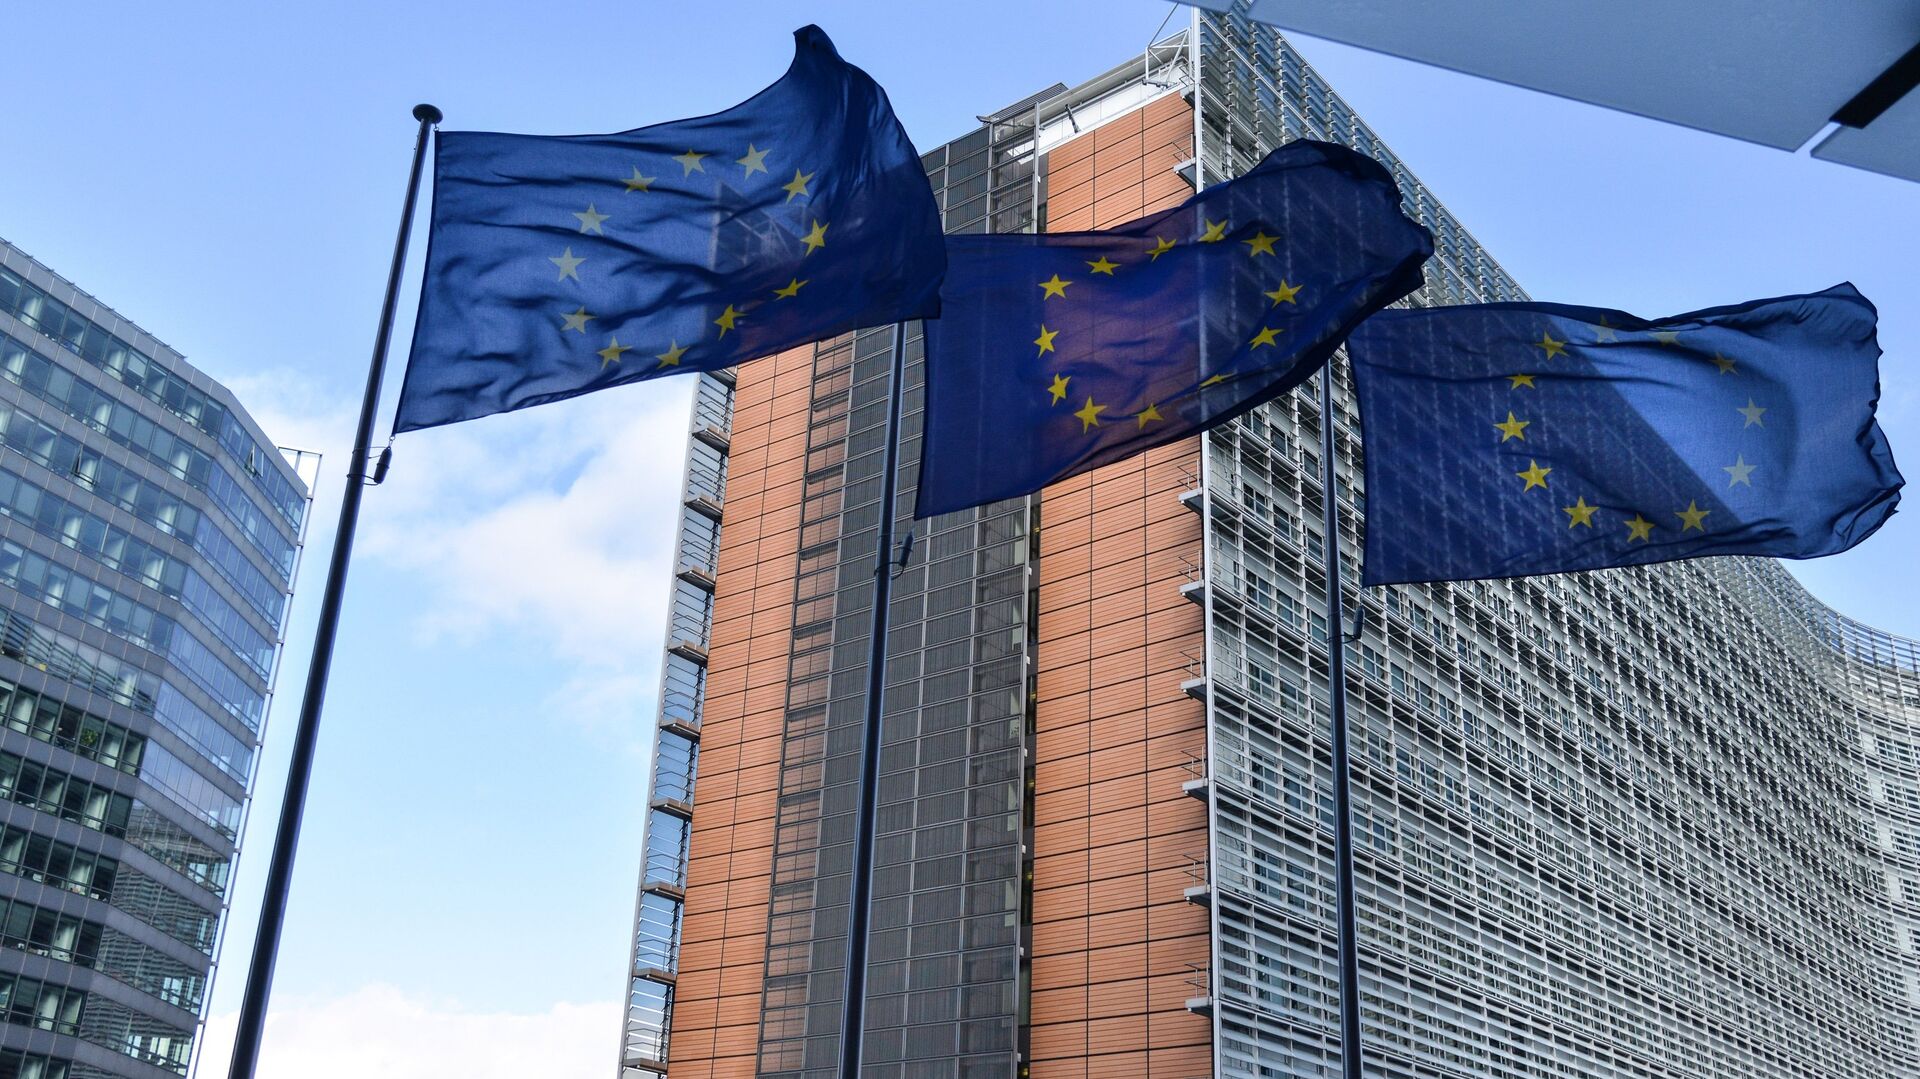 Заставе Европске уније испред зграде Европског савета у Бриселу - Sputnik Србија, 1920, 25.02.2021